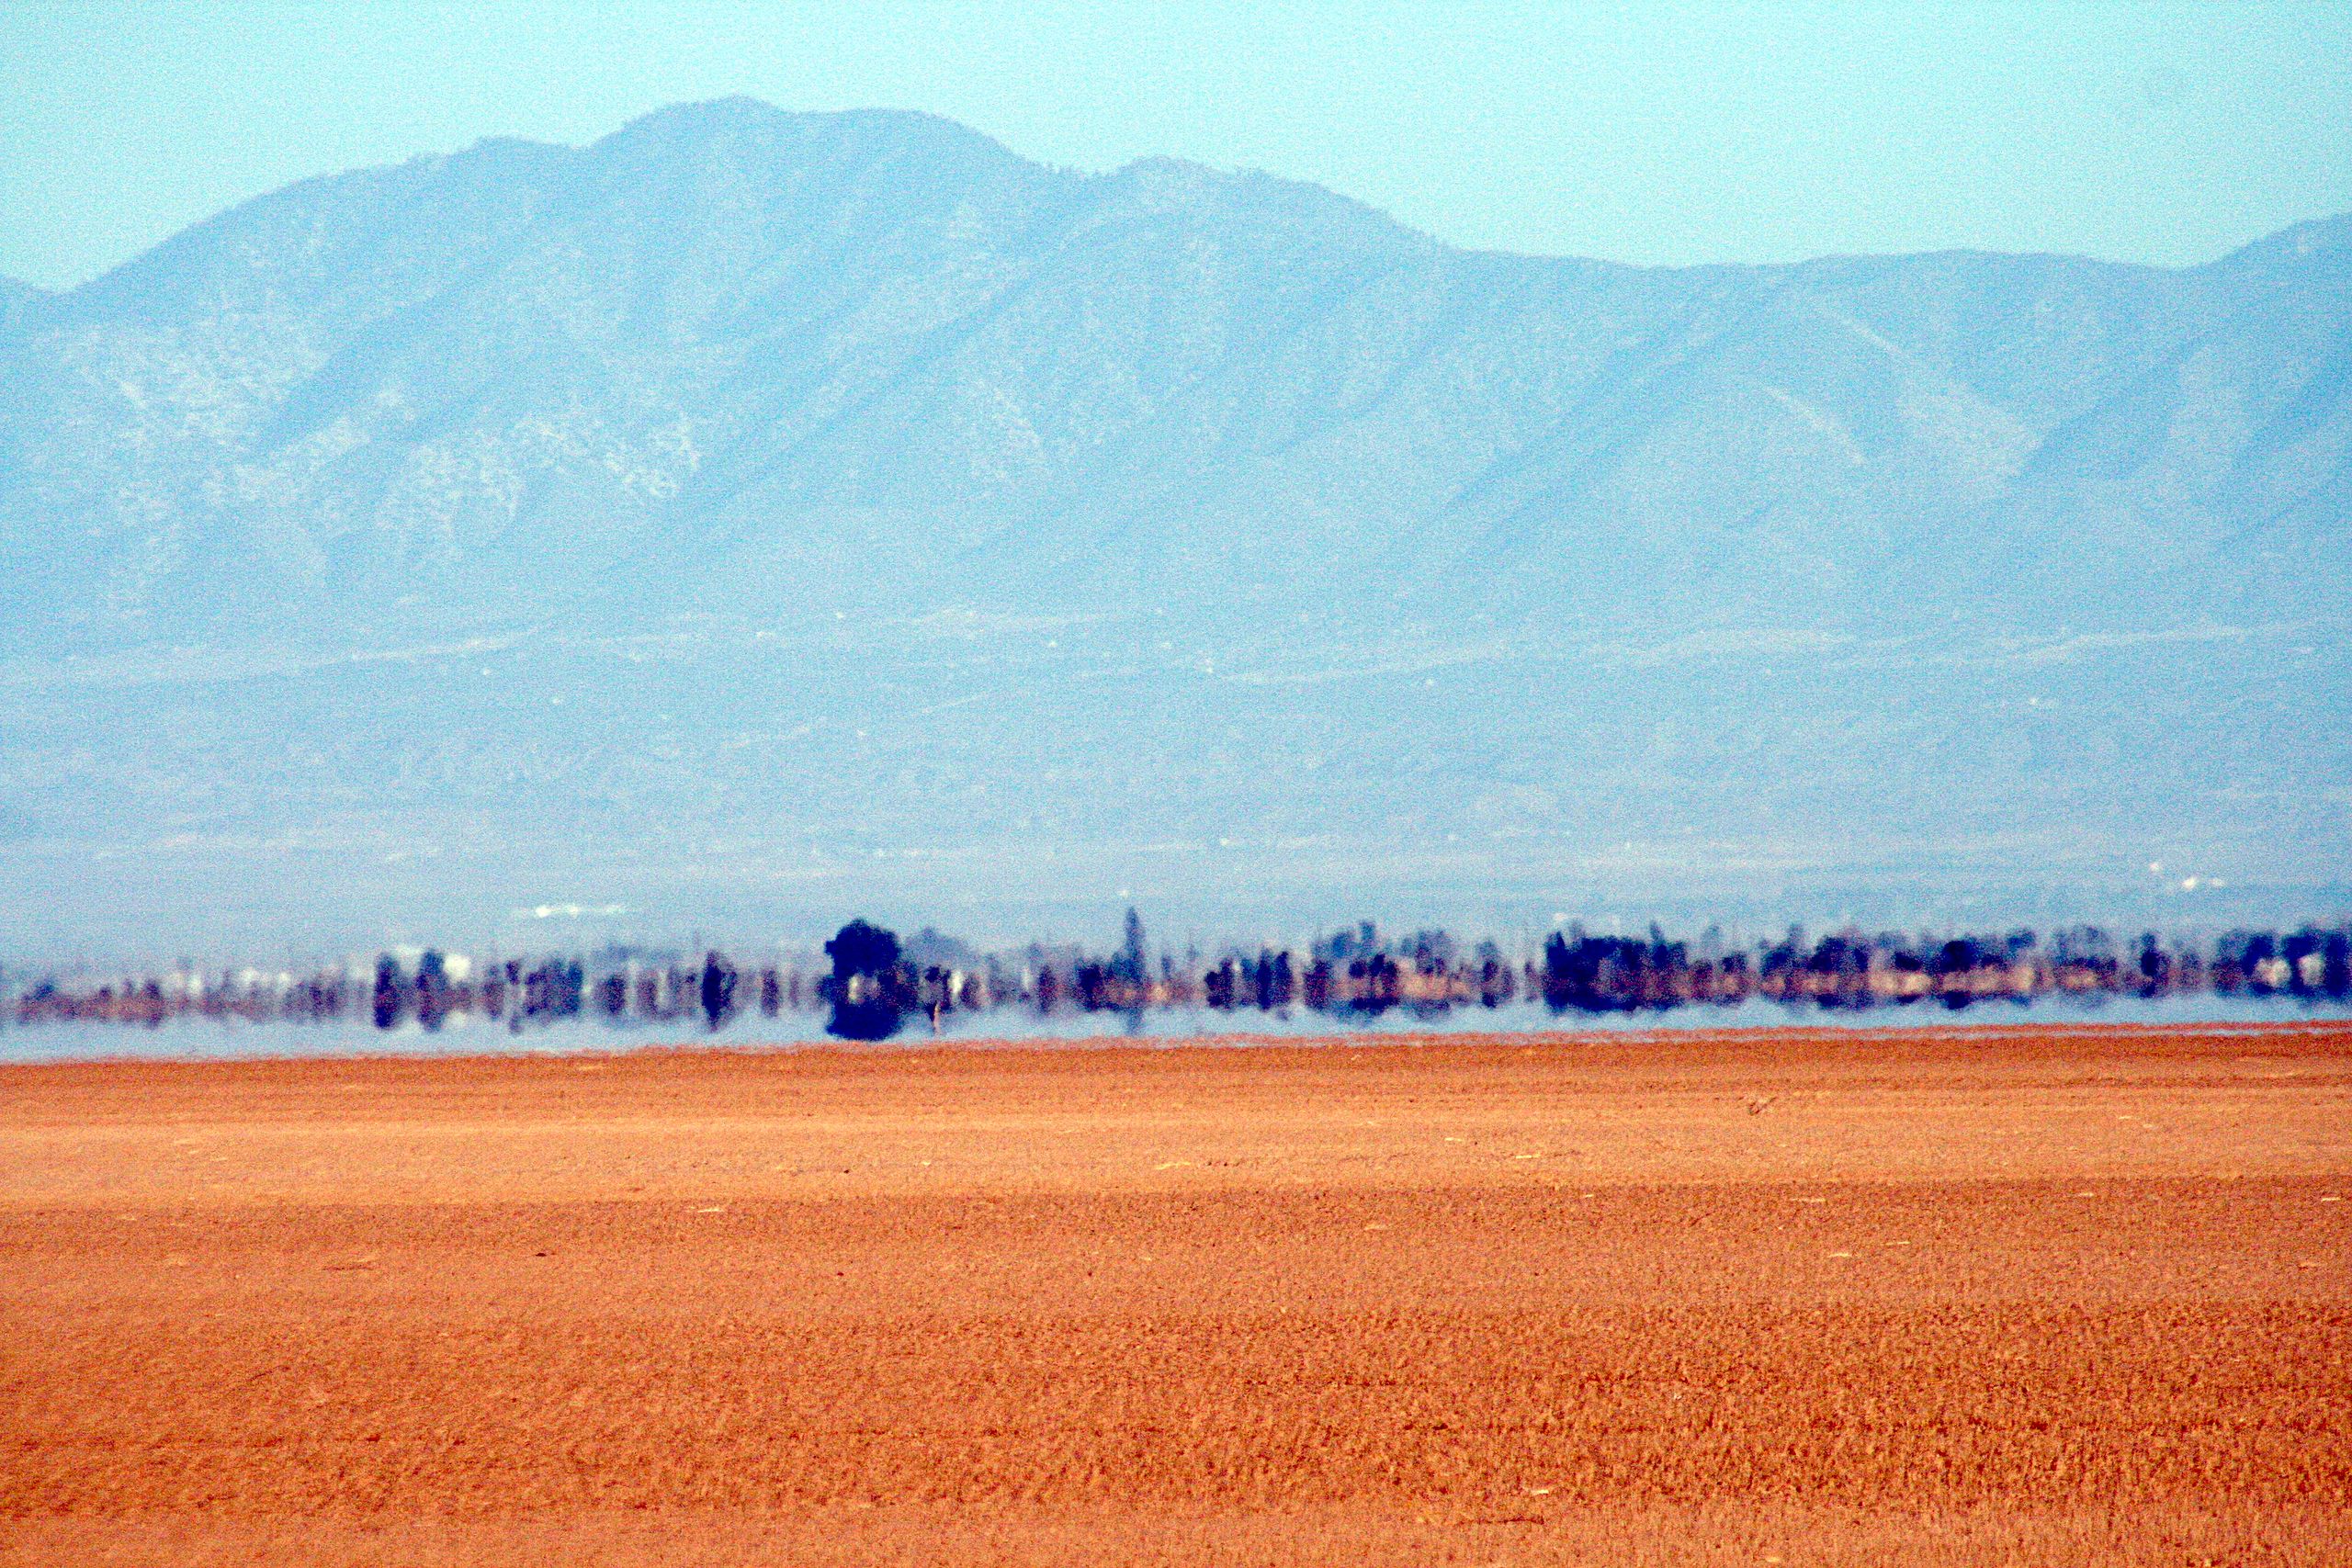 File:Desert mirage 62907.JPG - Wikimedia Commons